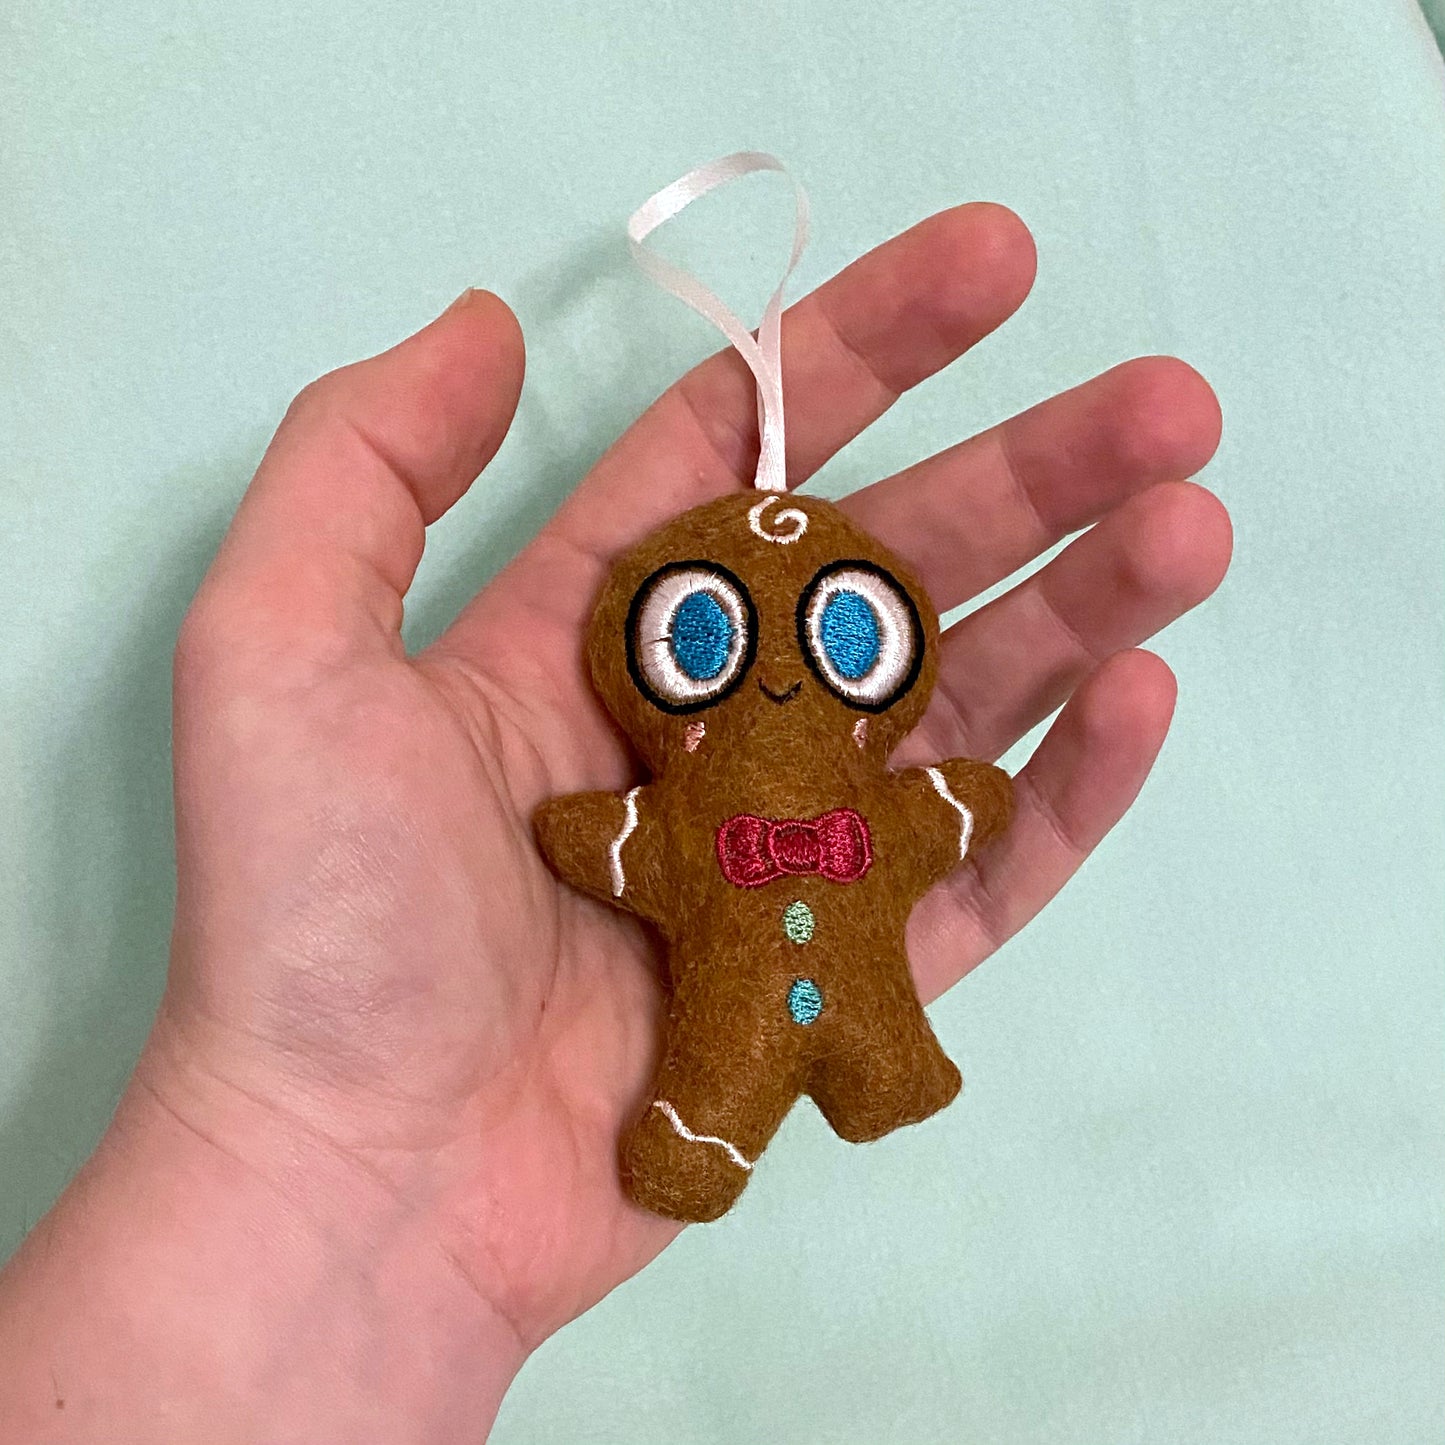 "Uh-oh Gingerbread" felt ornament